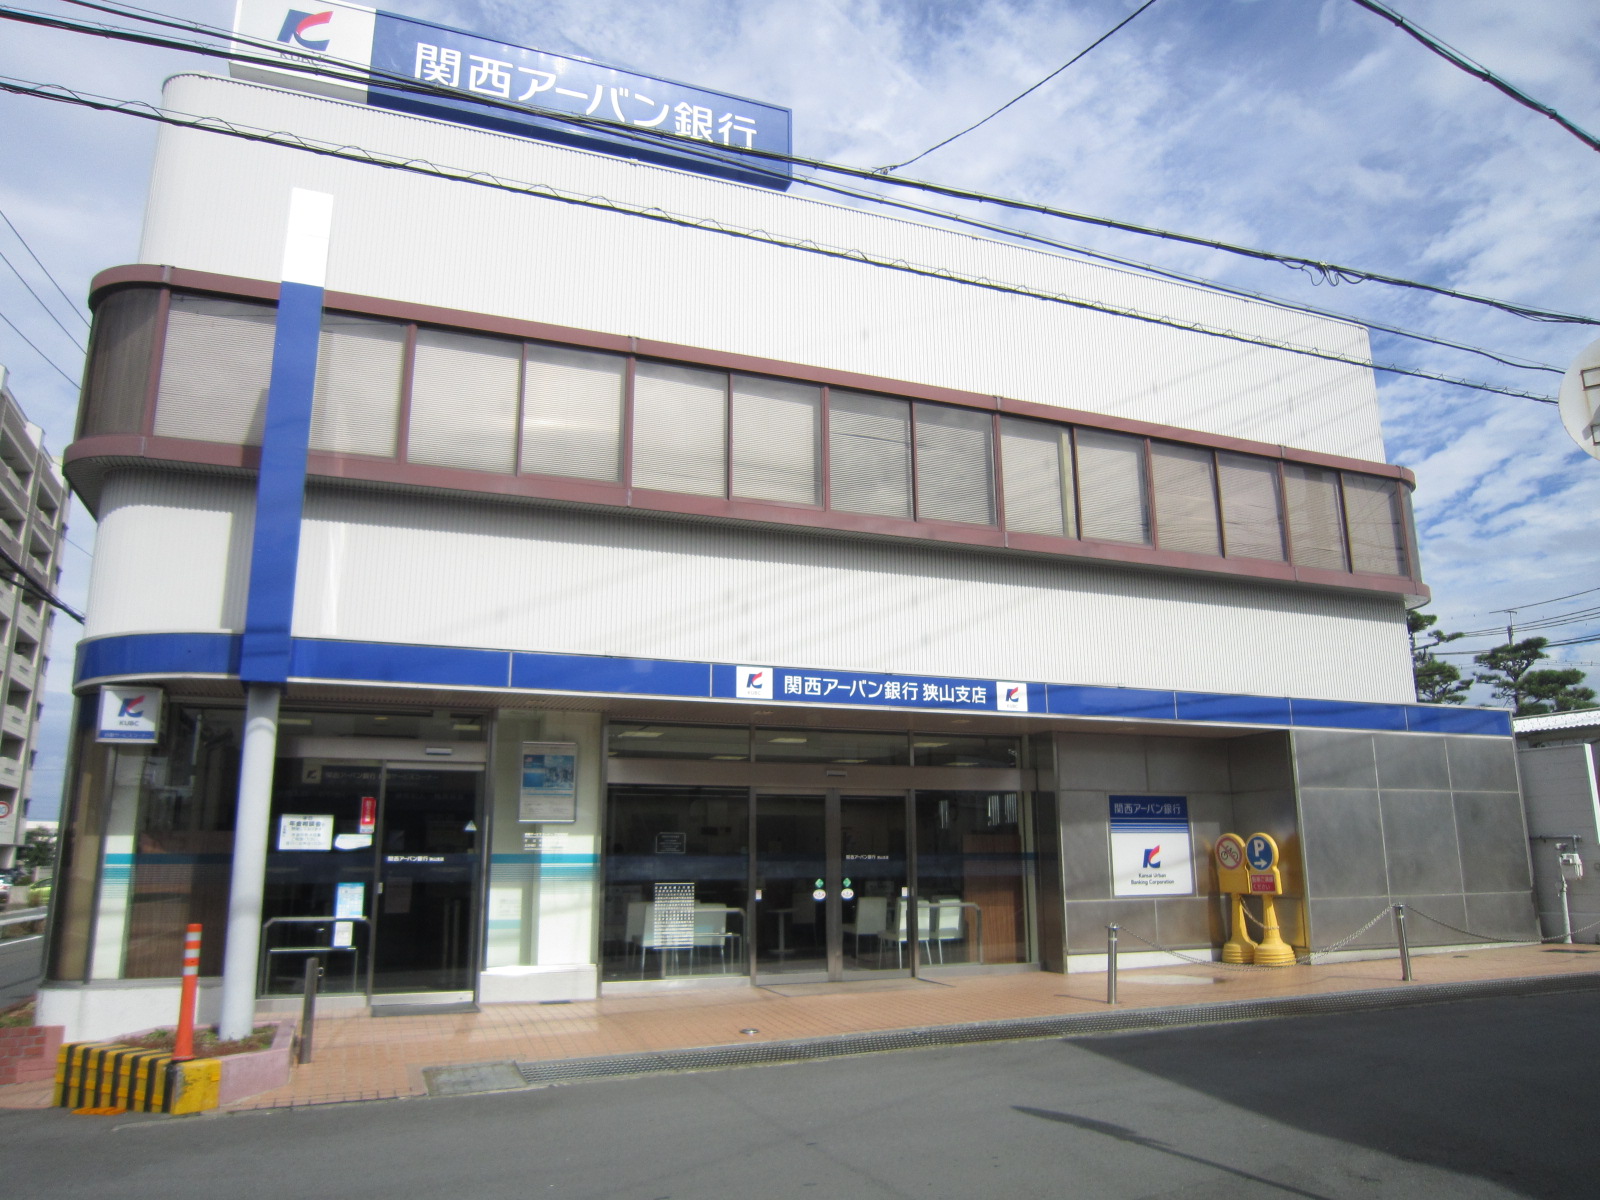 Bank. 351m to Kansai Urban Bank Sayama Branch (Bank)